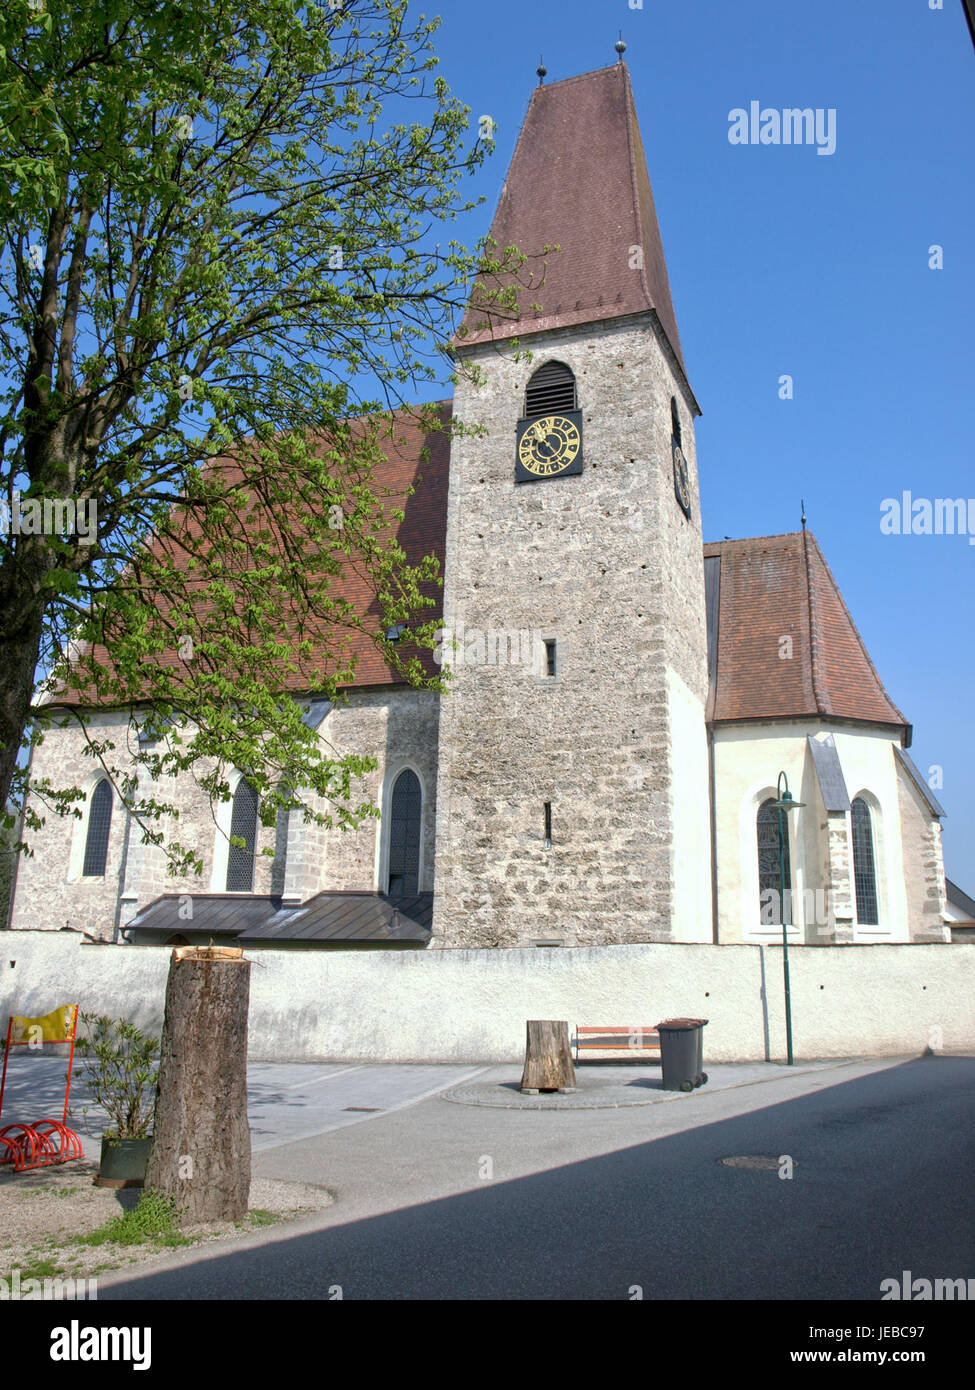 2013.04.24 - Haidershofen - Pfarrkirche hl. Severin und Friedhof - 03 Stock Photo